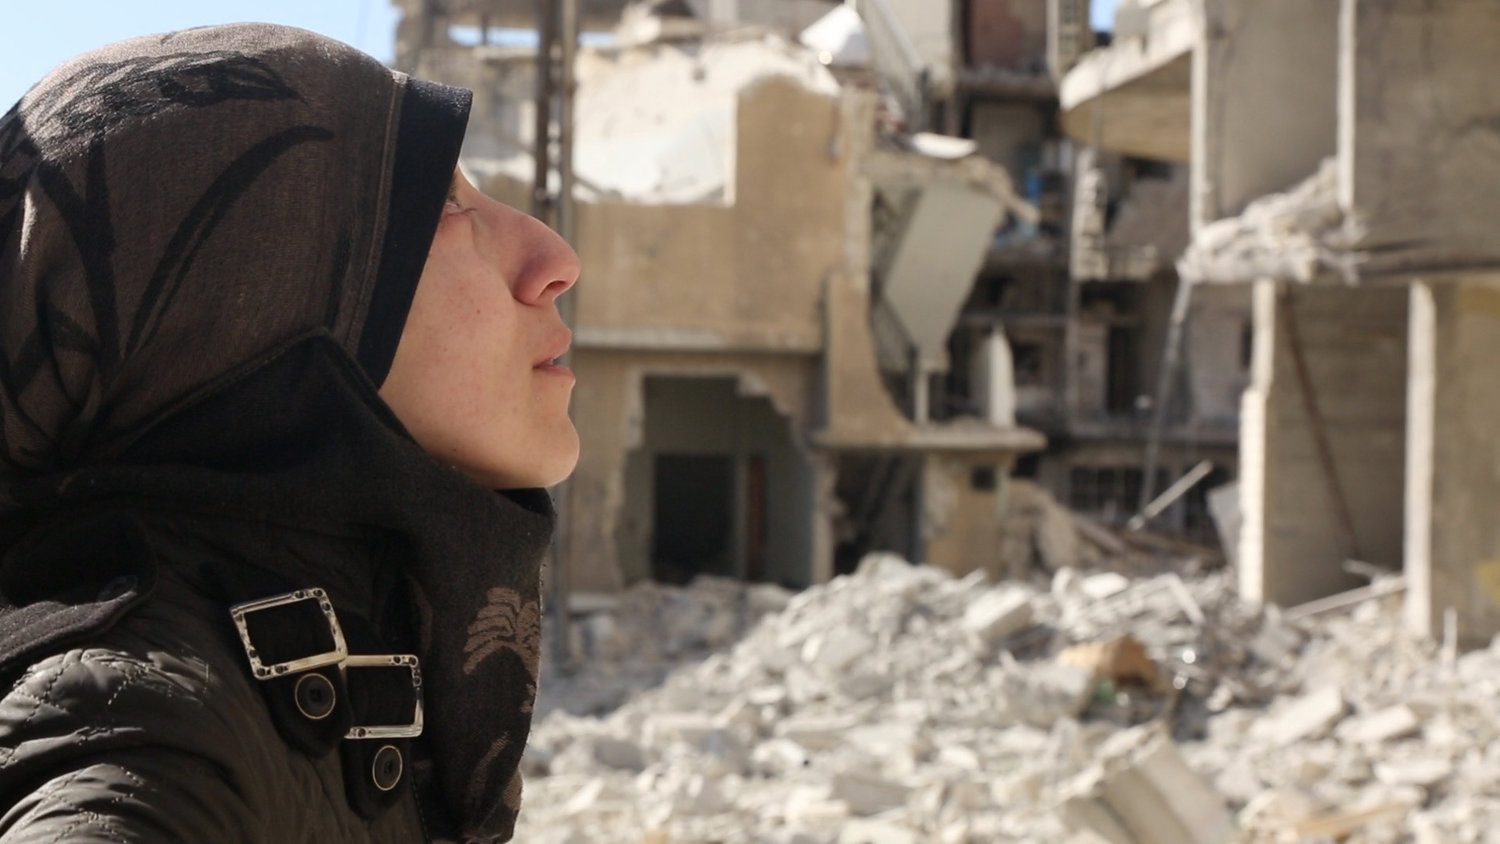 Mais chocante do que qualquer terror, "The Cave" é uma triste, mas real, visão do derramamento de sangue na Síria